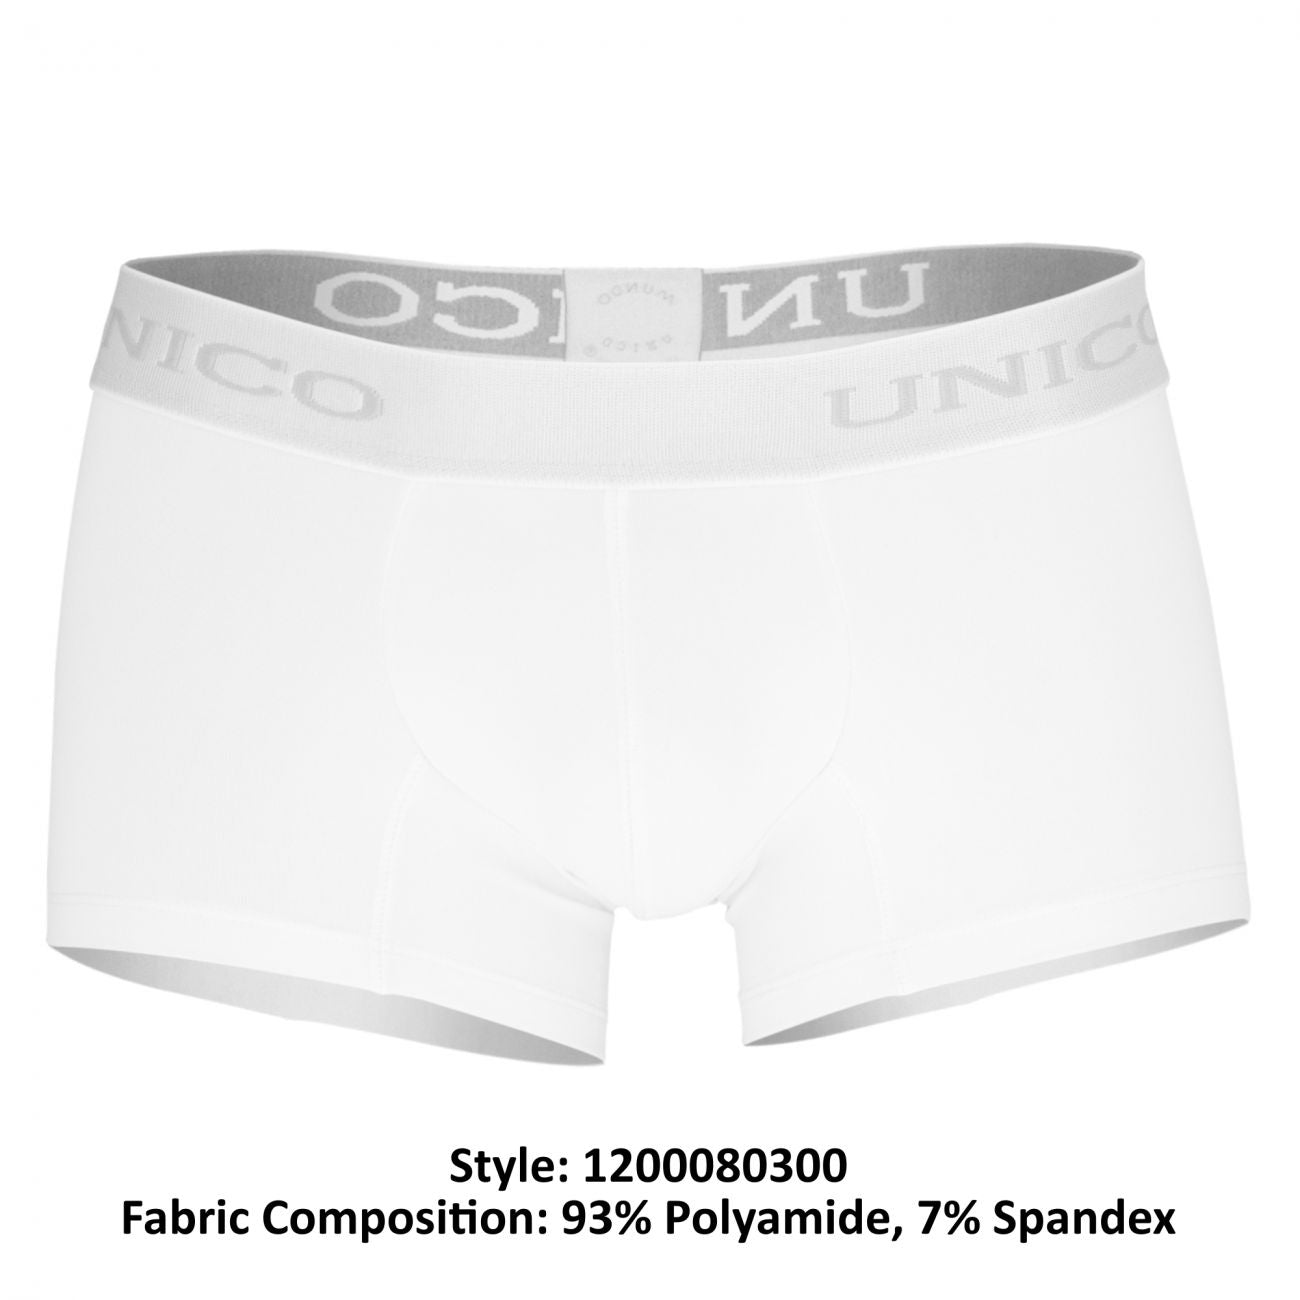 Unico 1200080300 Boxer Briefs Cristalino White